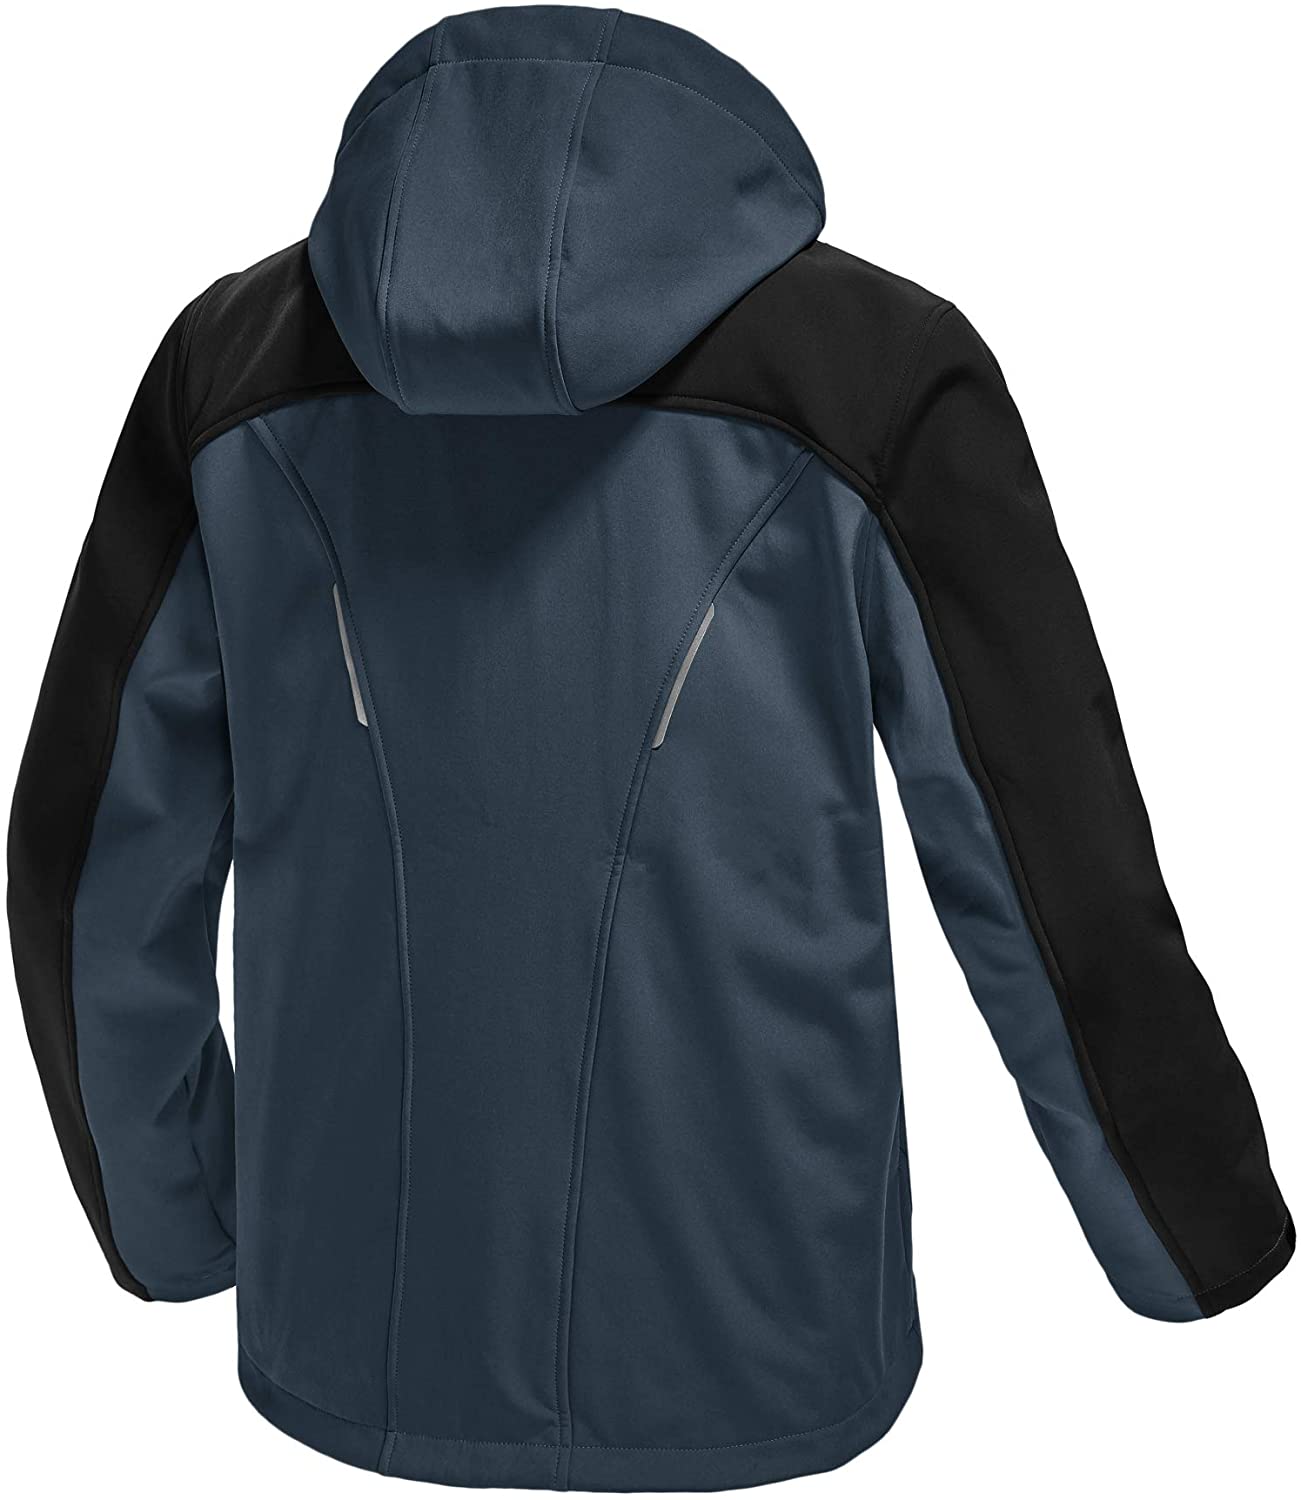 TBMPOY Men's Softshell Windproof Jacket Outdoor Fleece-Lined Water Resistant Coa | eBay